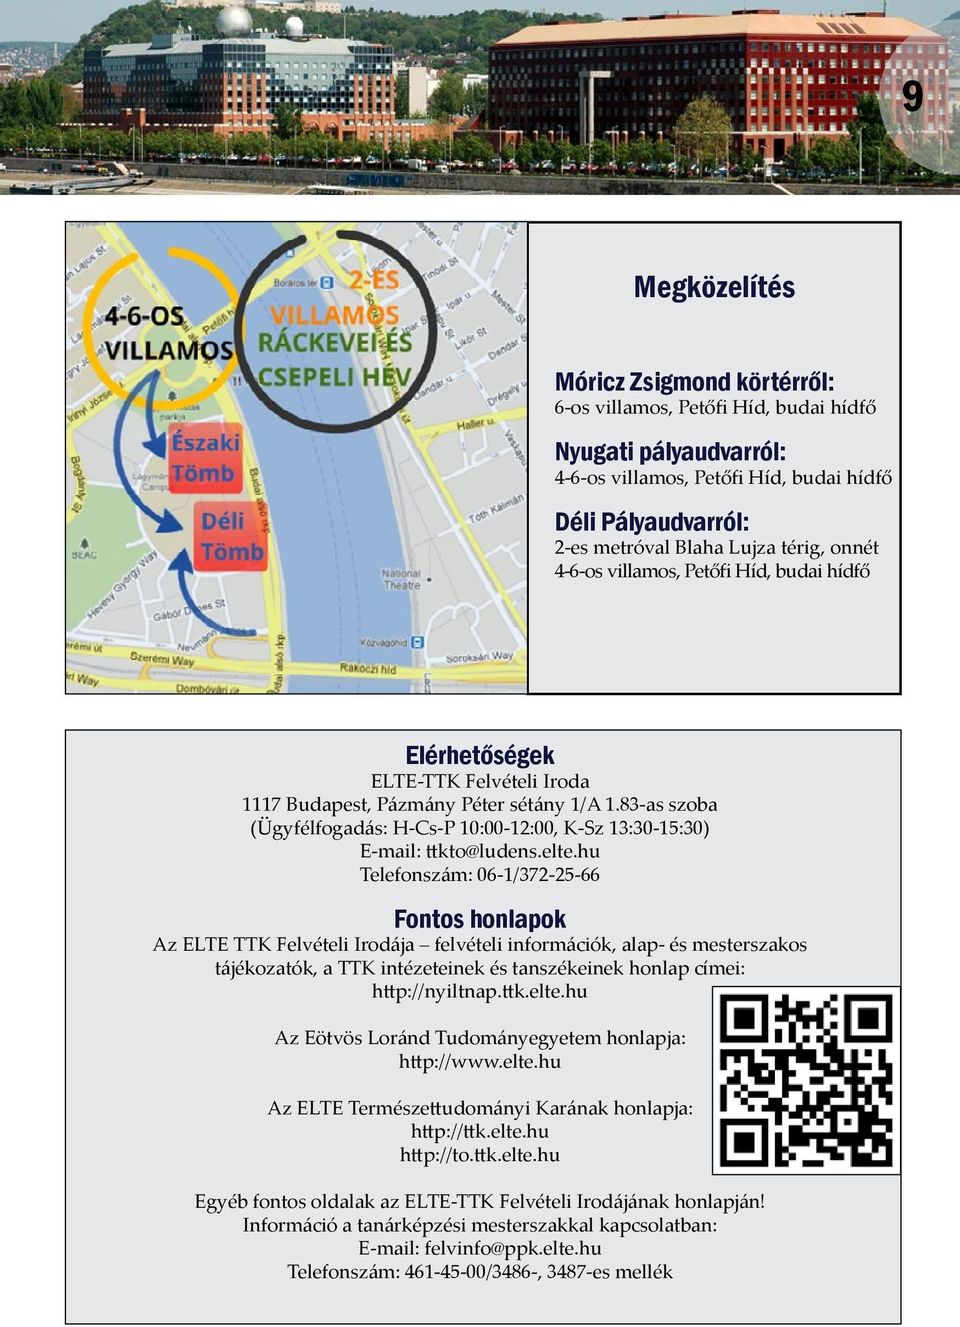 ELTE-TTK Központi előadások a Nagytermekben - PDF Free Download